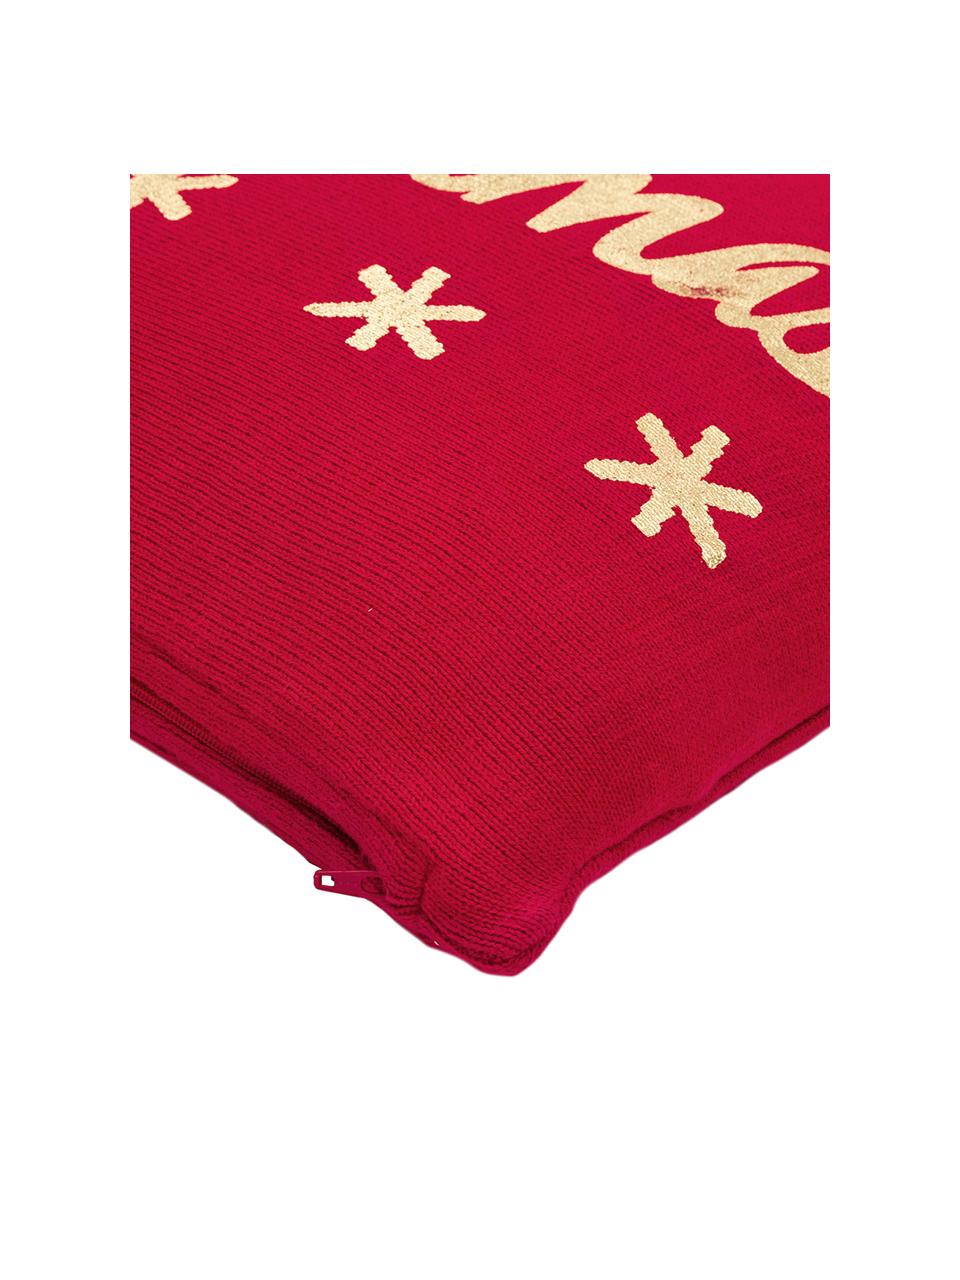 Poszewka na poduszkę z dzianiny Christmas, Bawełna, Czerwony, S 40 x D 40 cm